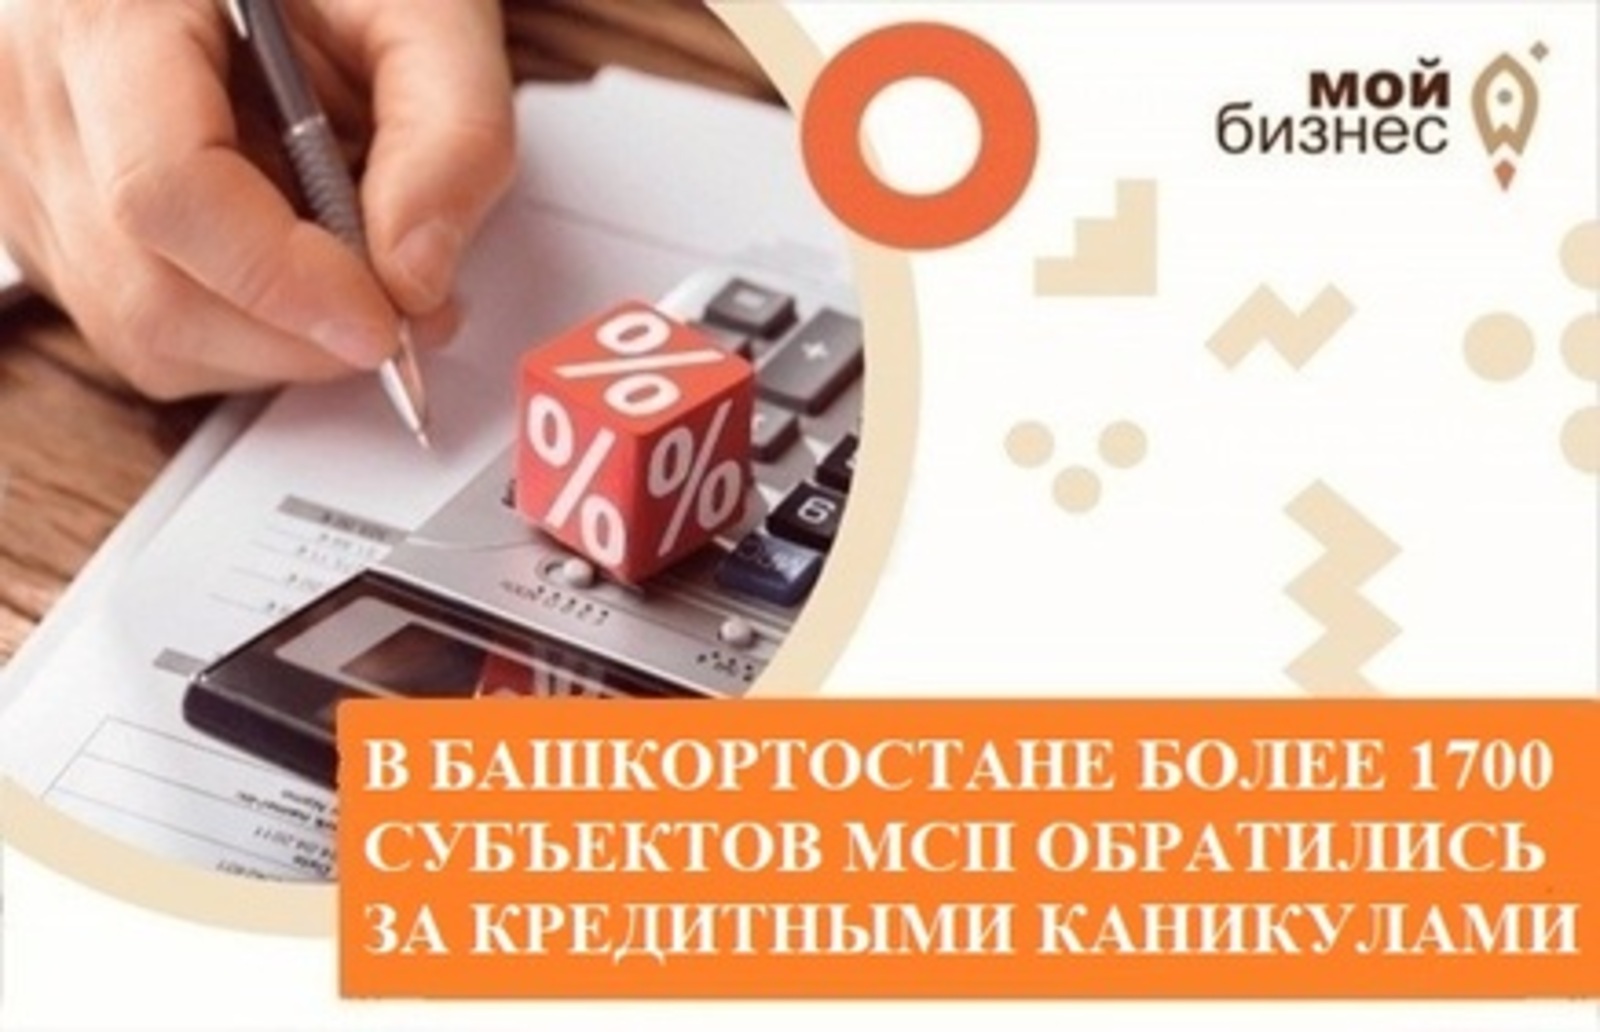 В Башкортостане более 1700 субъектов МСП обратились за кредитными каникулами